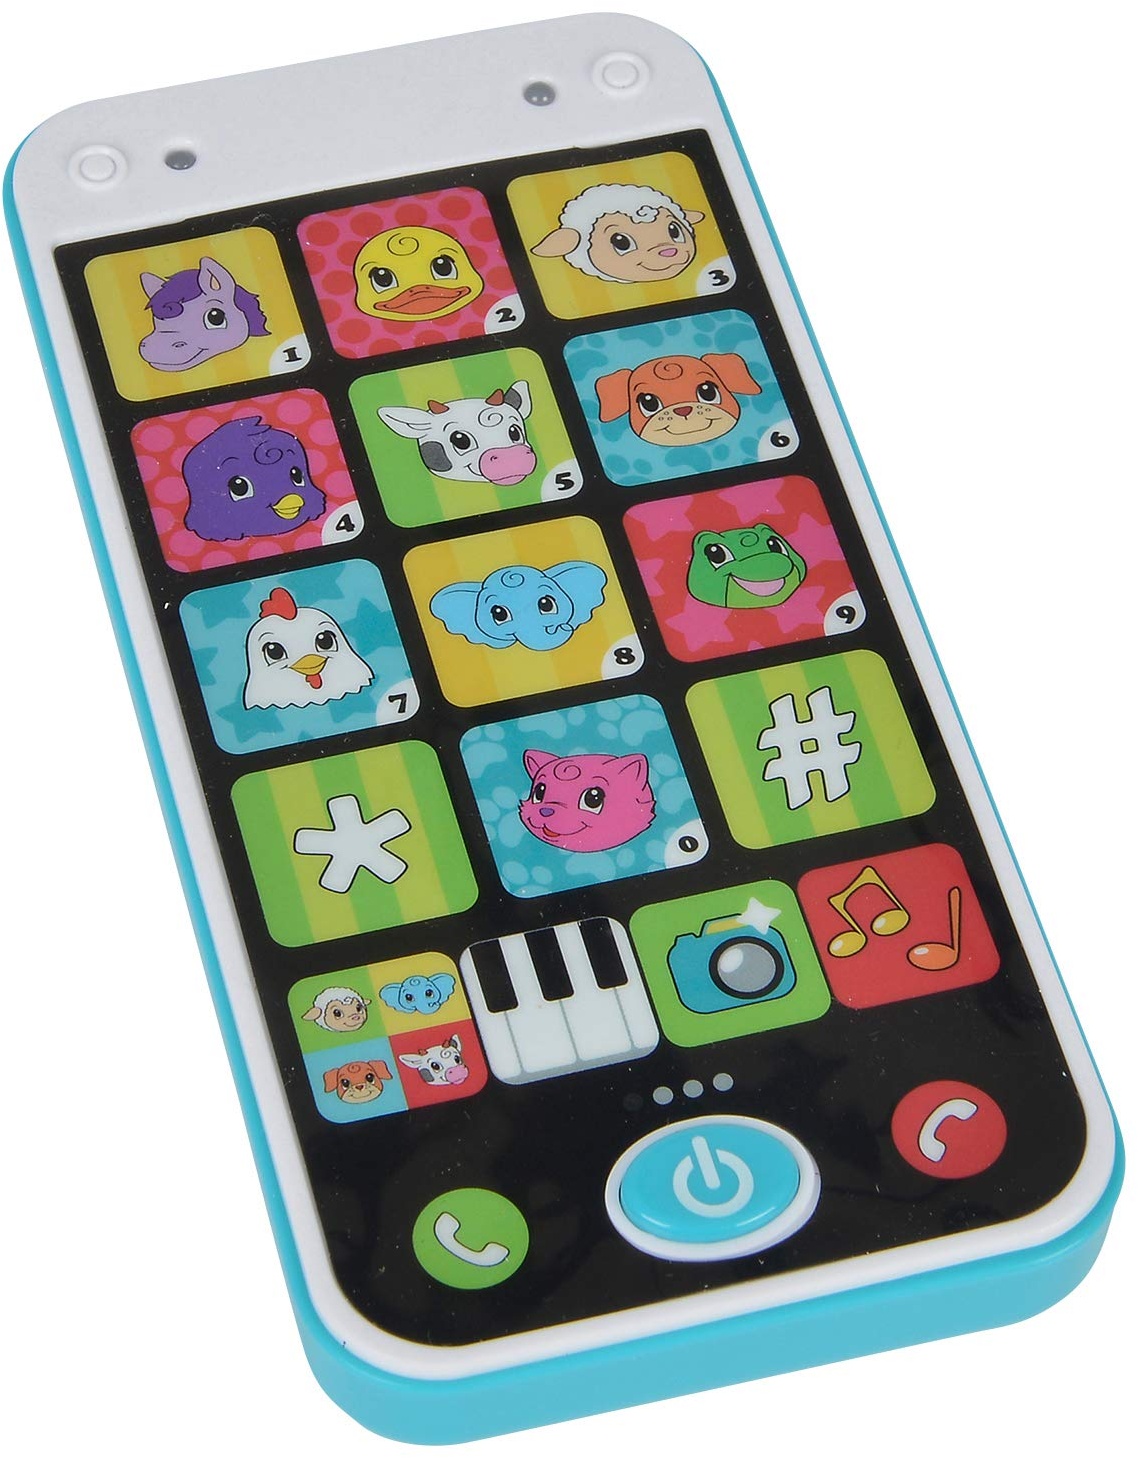 Simba 104010002 - ABC Smartphone für Kinder, Spielzeughandy mit Licht, Sound, verschiedenen Melodien und Tiergeräuschen, für Kinder ab 12 Monaten